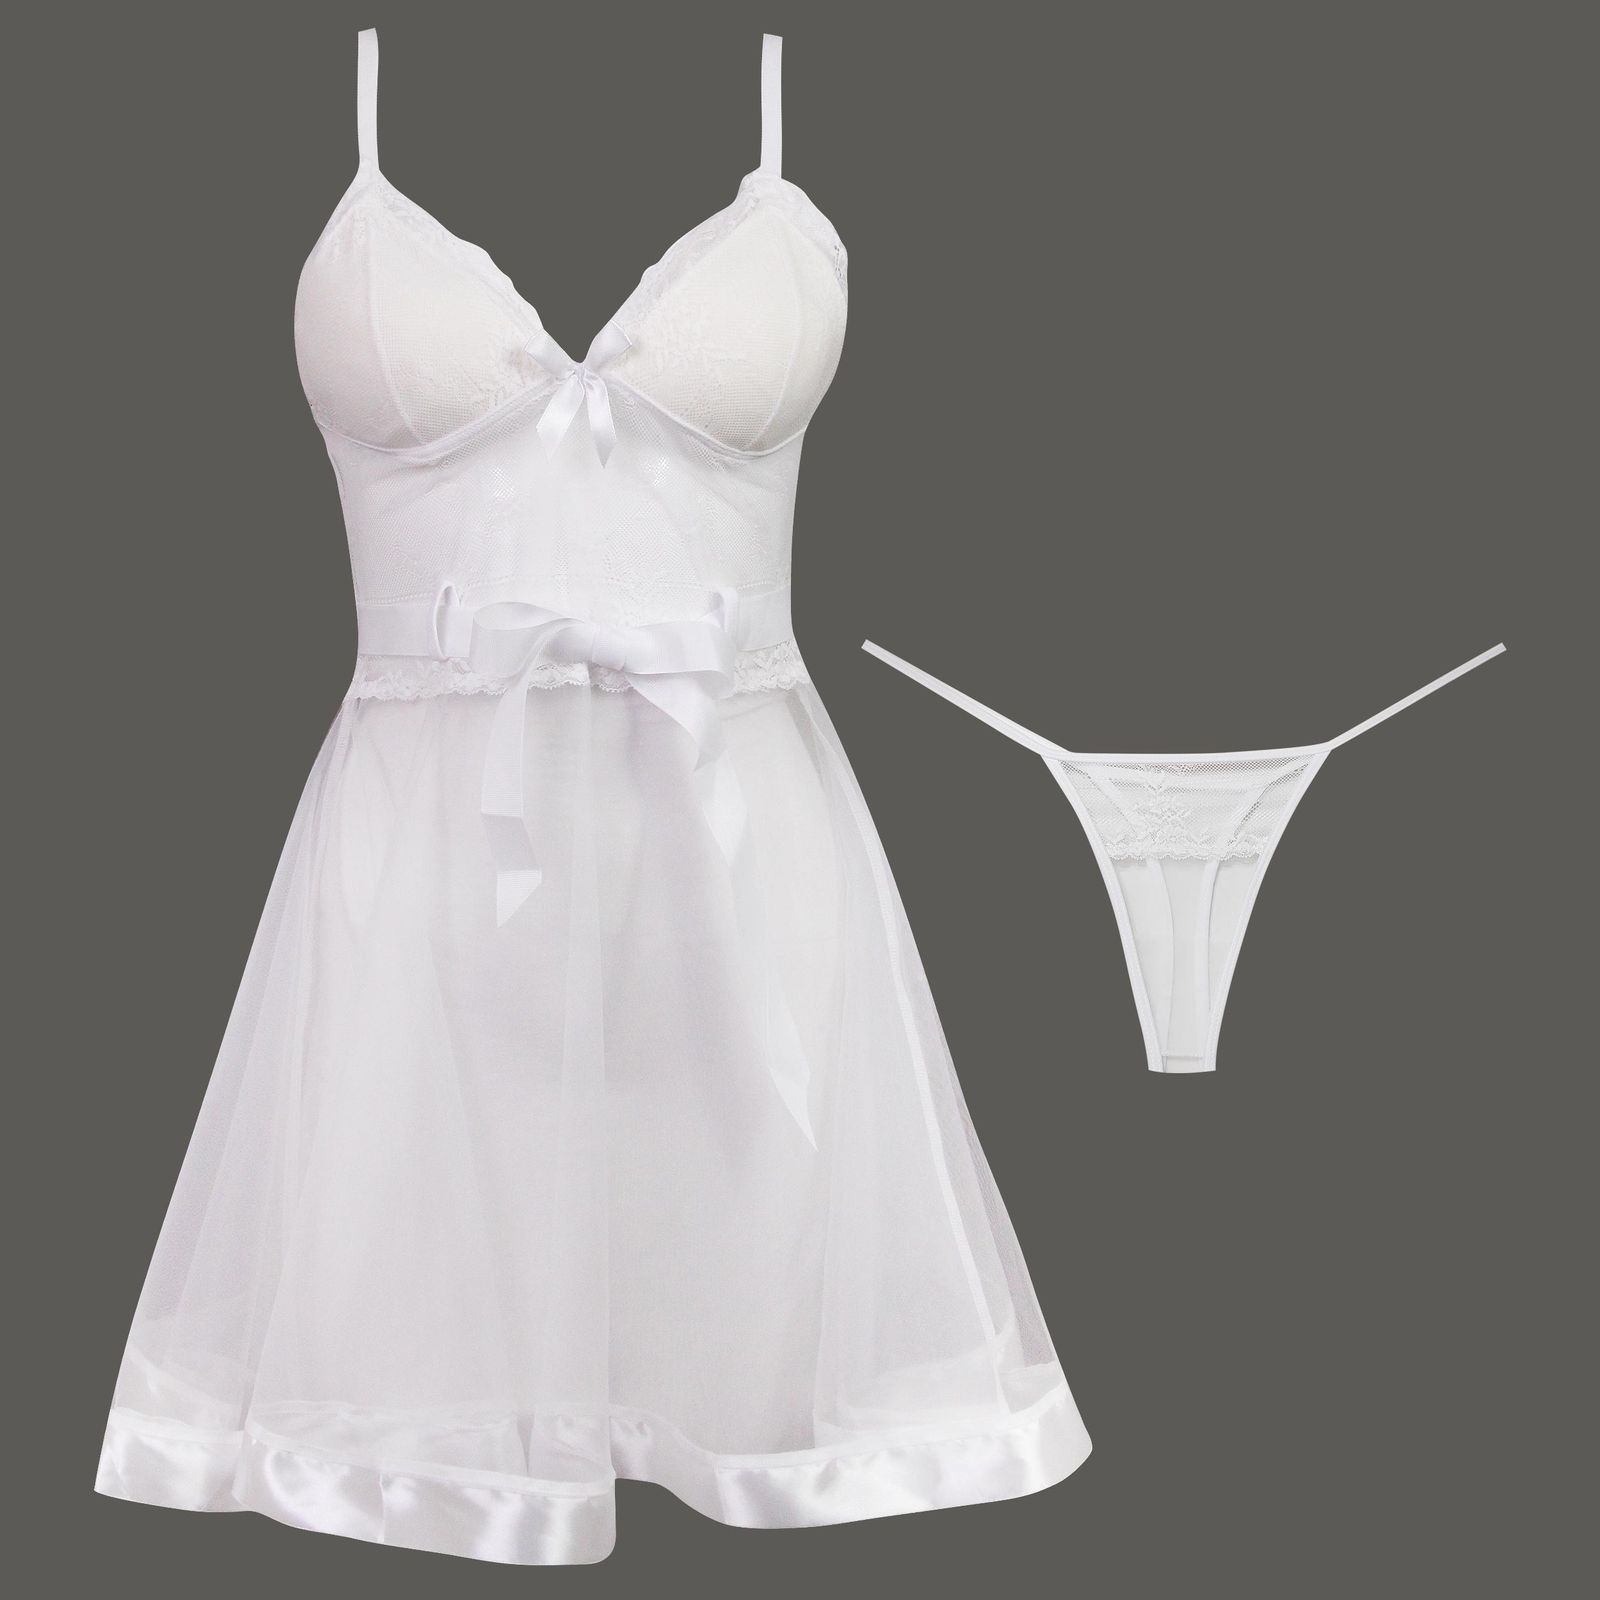 لباس خواب زنانه ماییلدا مدل گیپور گلدار کد 3685-820 رنگ سفید -  - 1